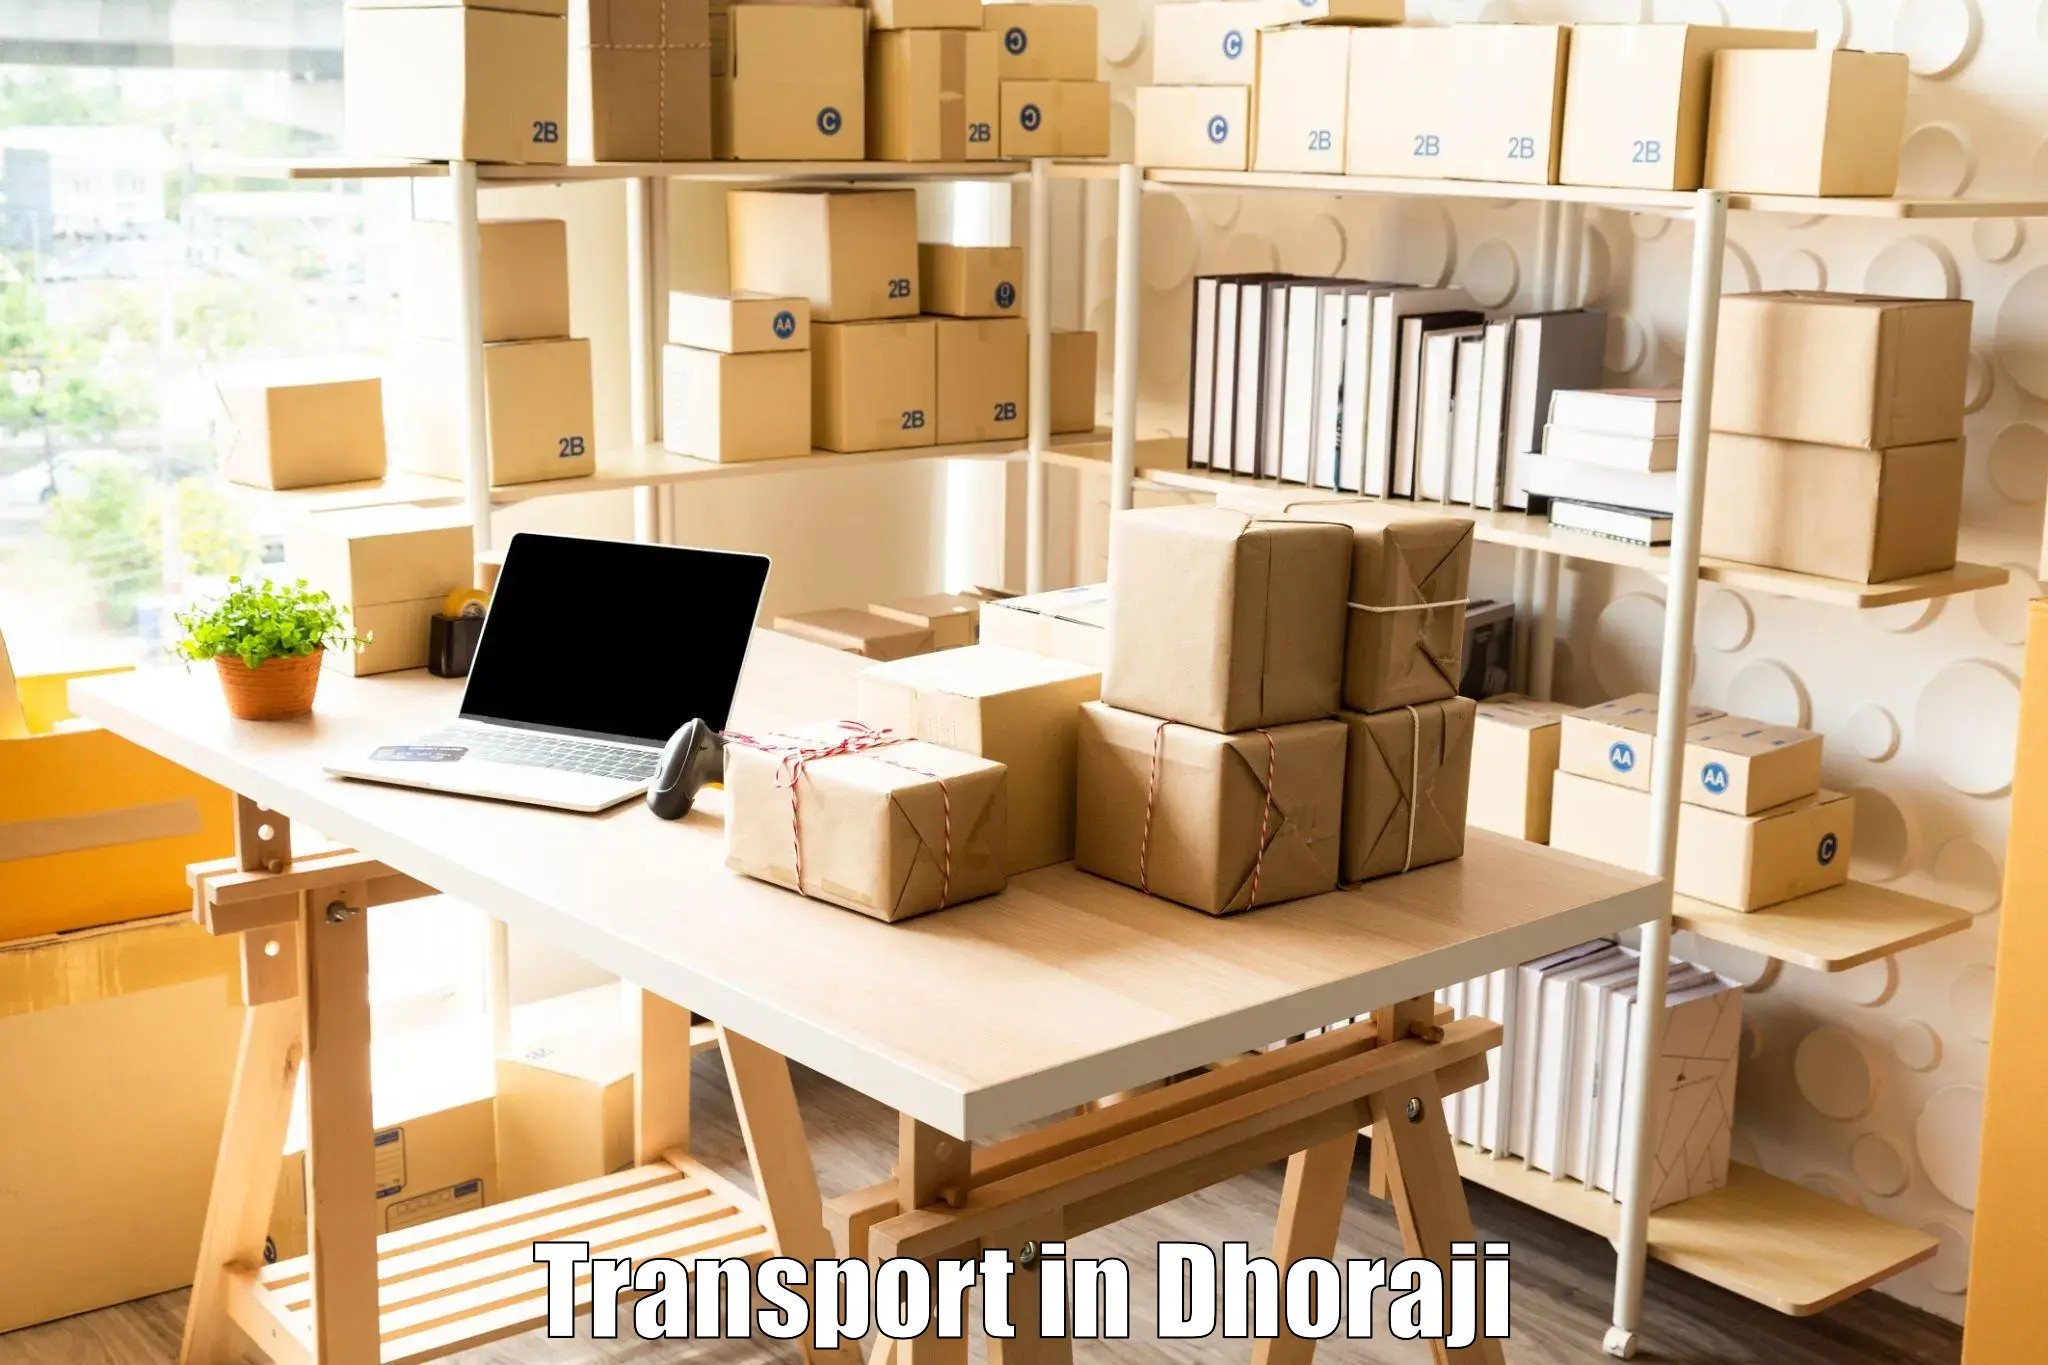 Land transport services in Dhoraji